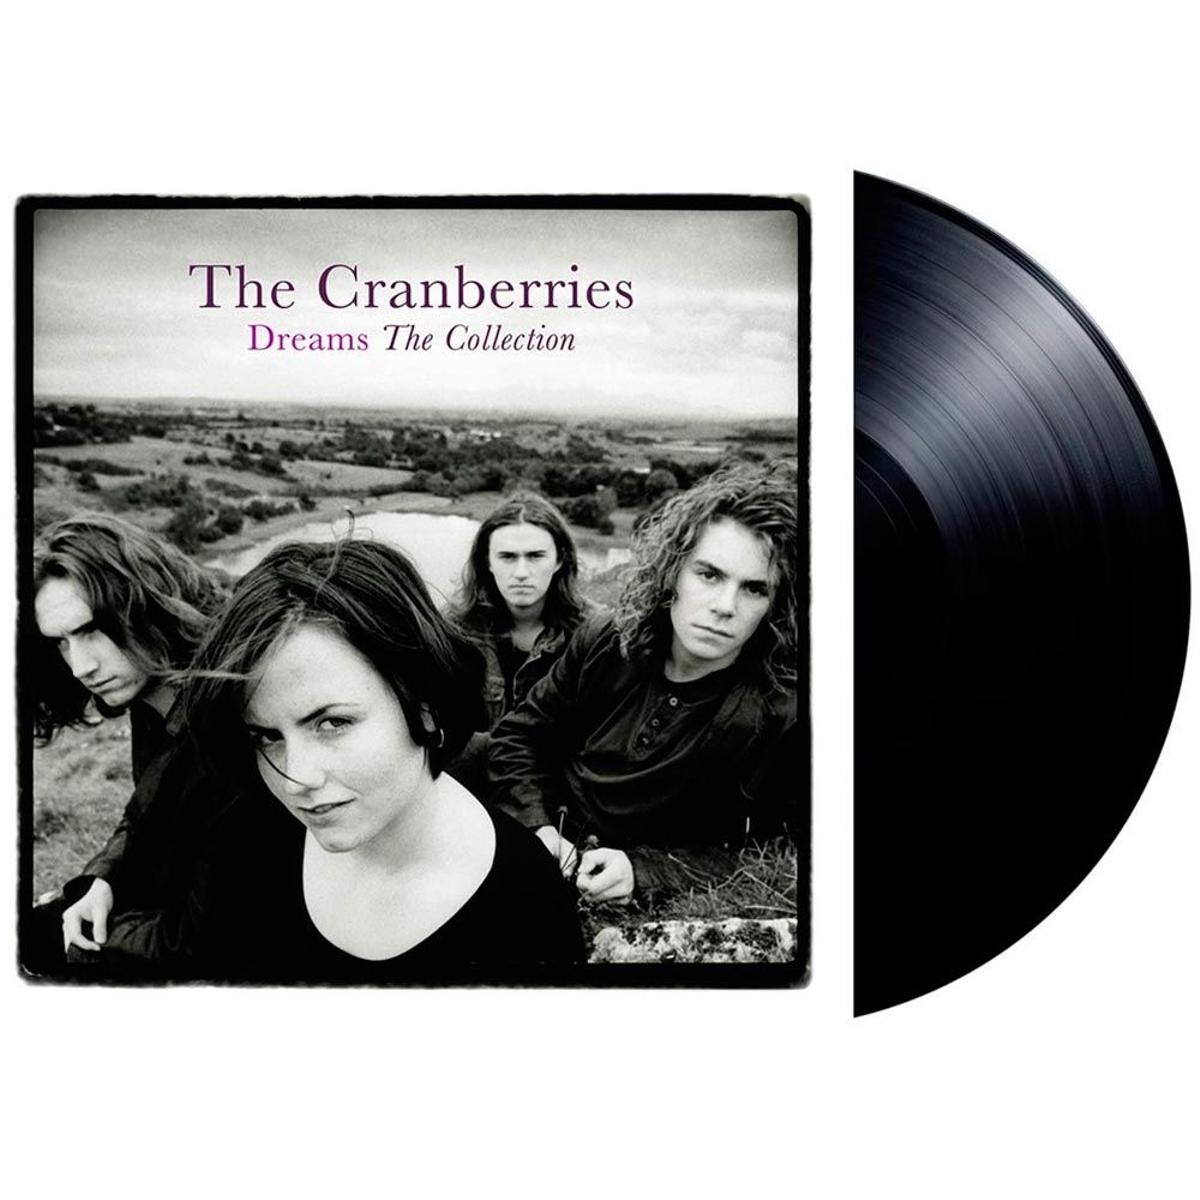 Vinilo 'Dreams: The Collection' de The Cranberries a la venta en Amazon. (Precio: 23,55 euros)